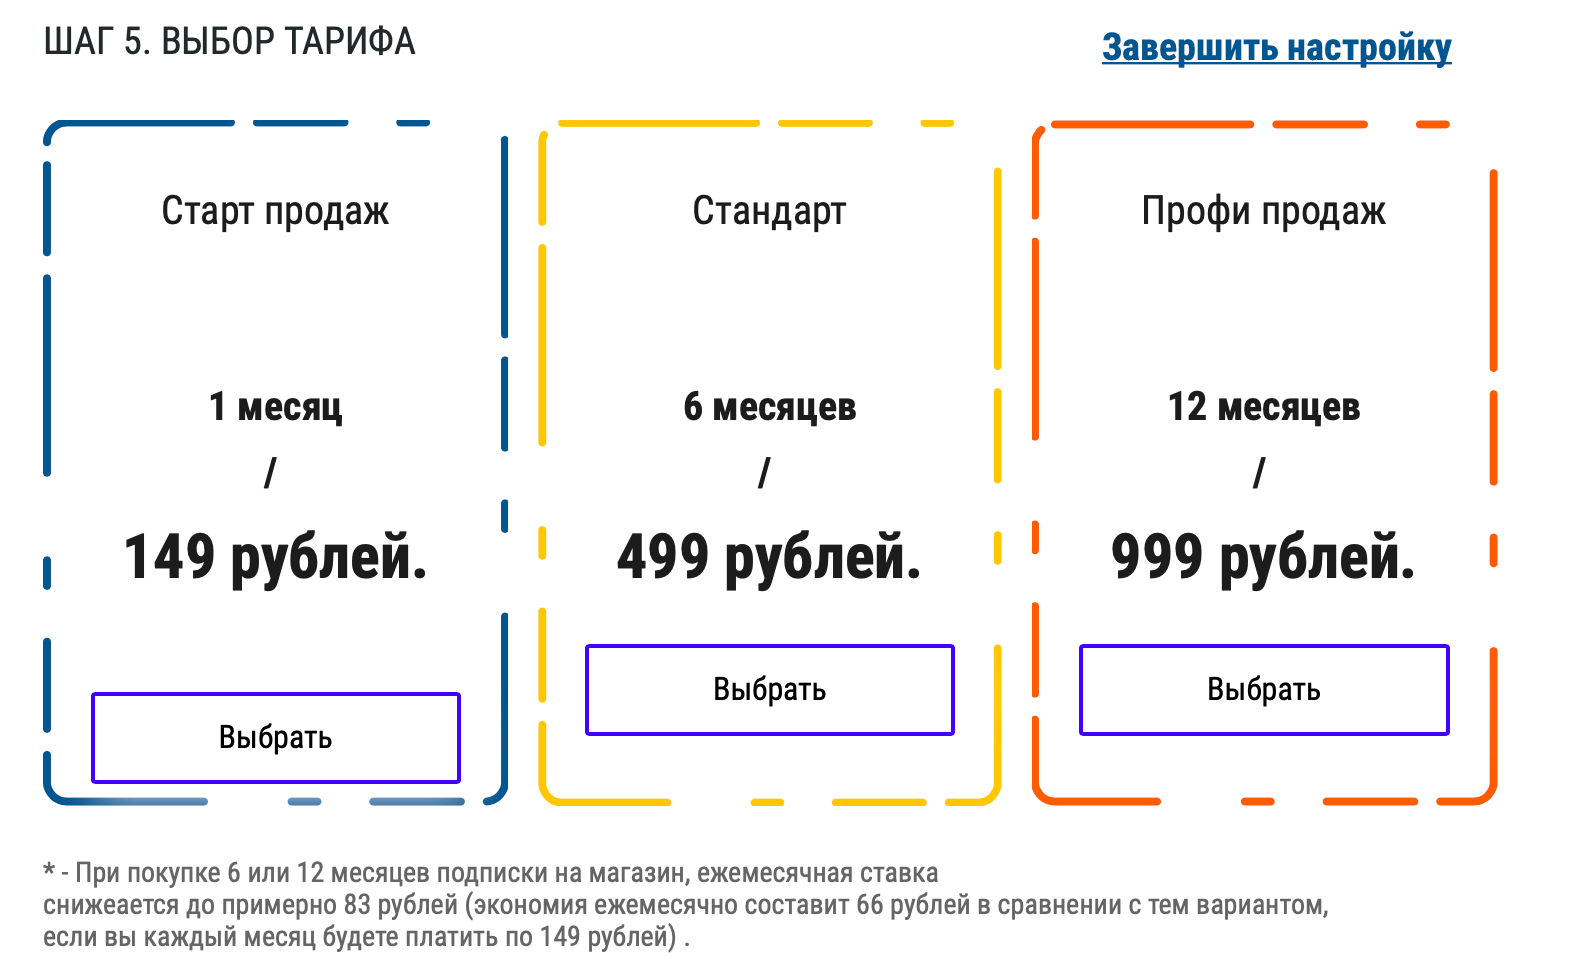 Sbagry — самый простой способ создать свой магазин и мобильный тендер по всей России